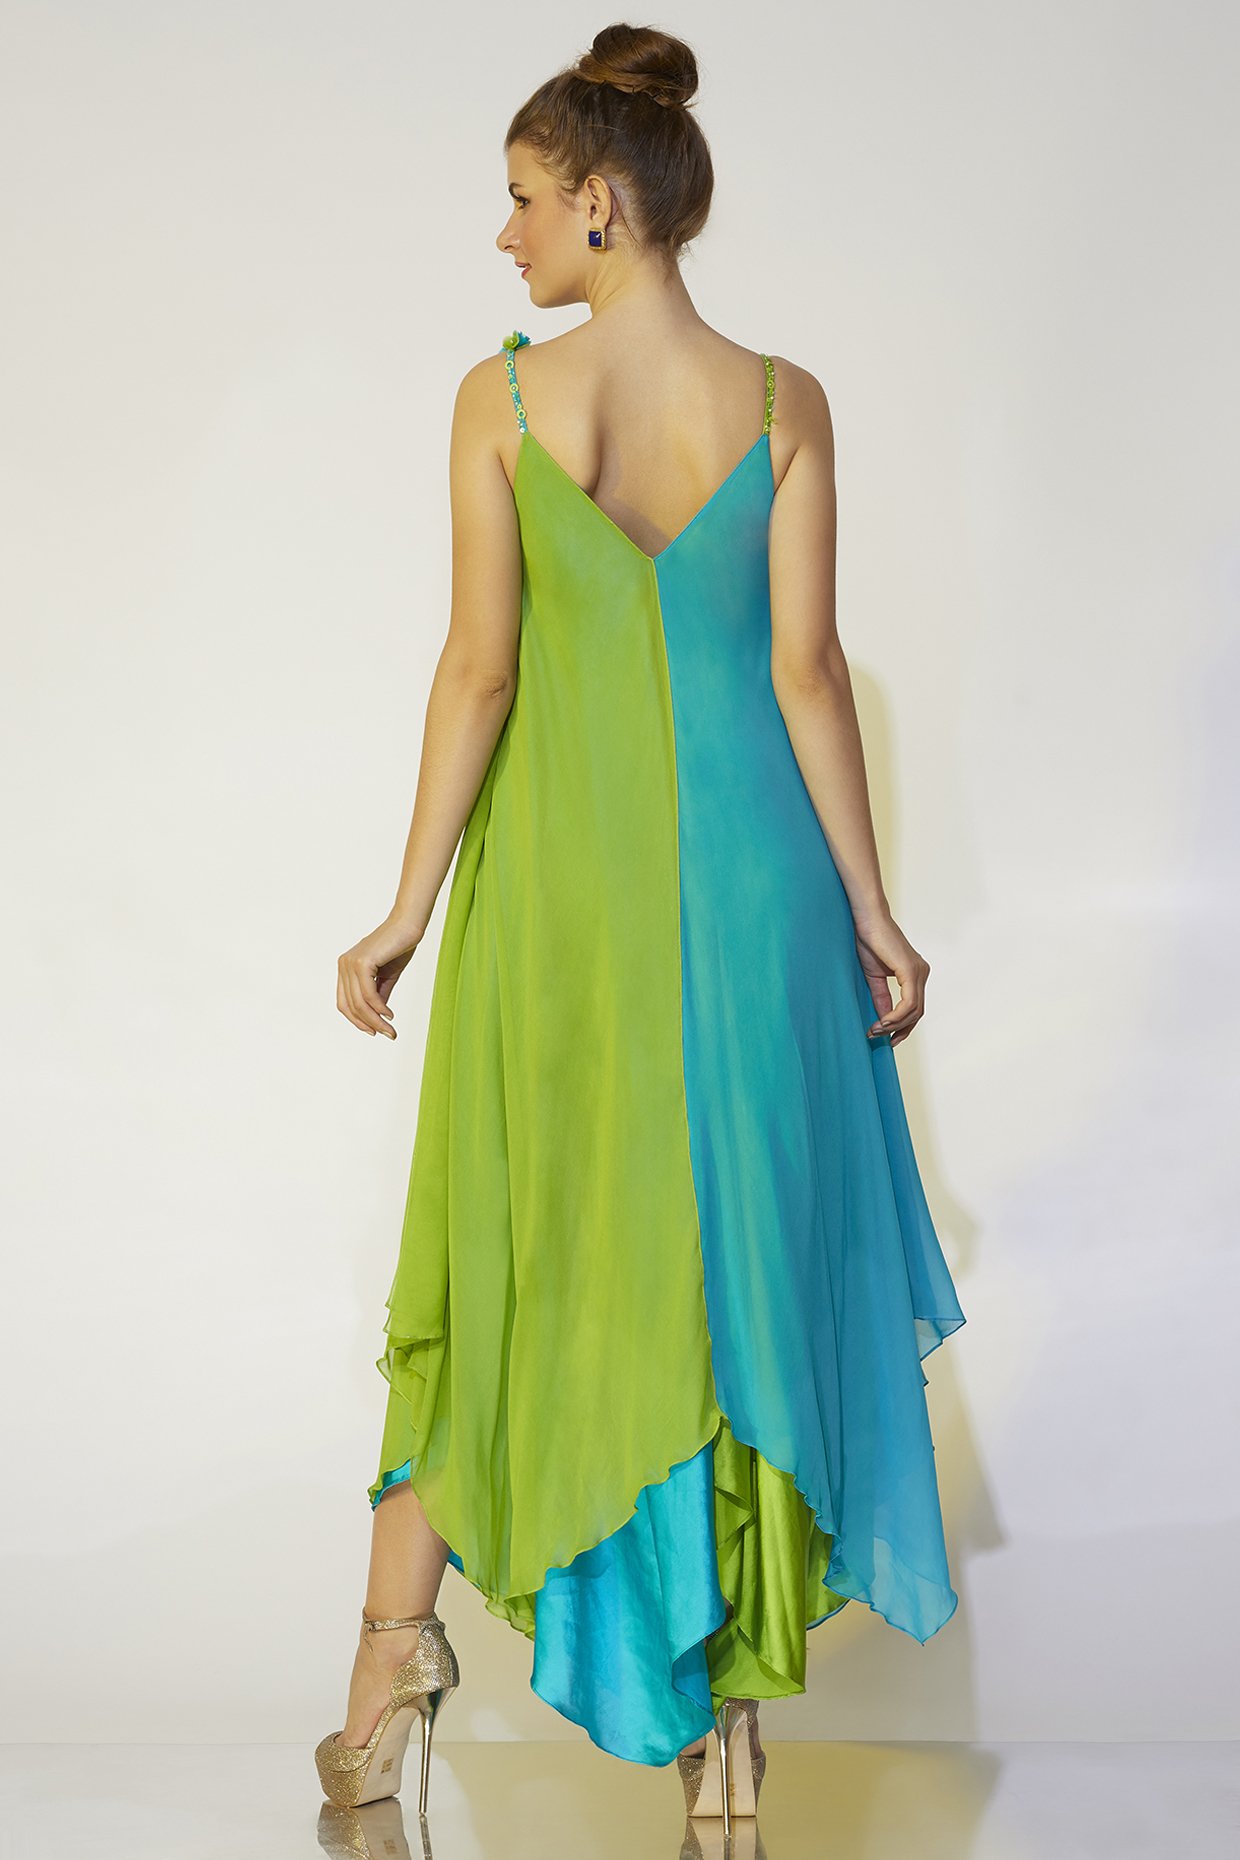 Cute Neon Green Dress - Short Sleeve Dress - $36.00 - Lulus